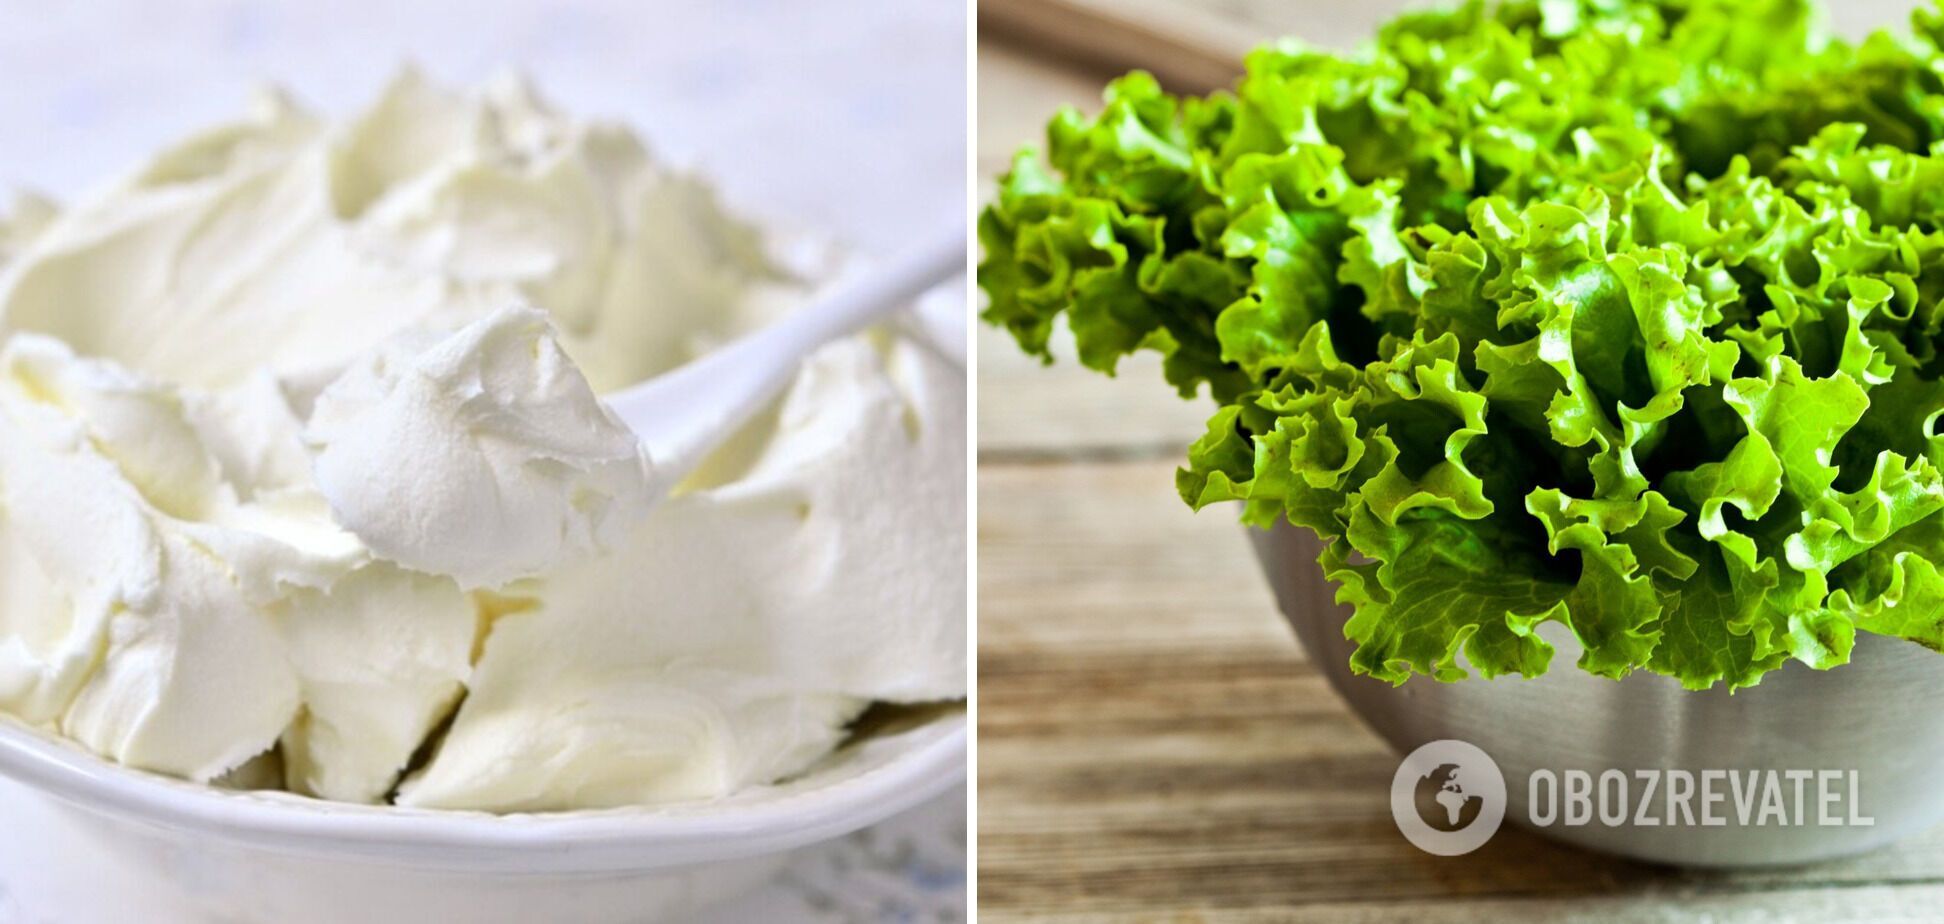 Листя салату чудово поєднуються з крем-сиром